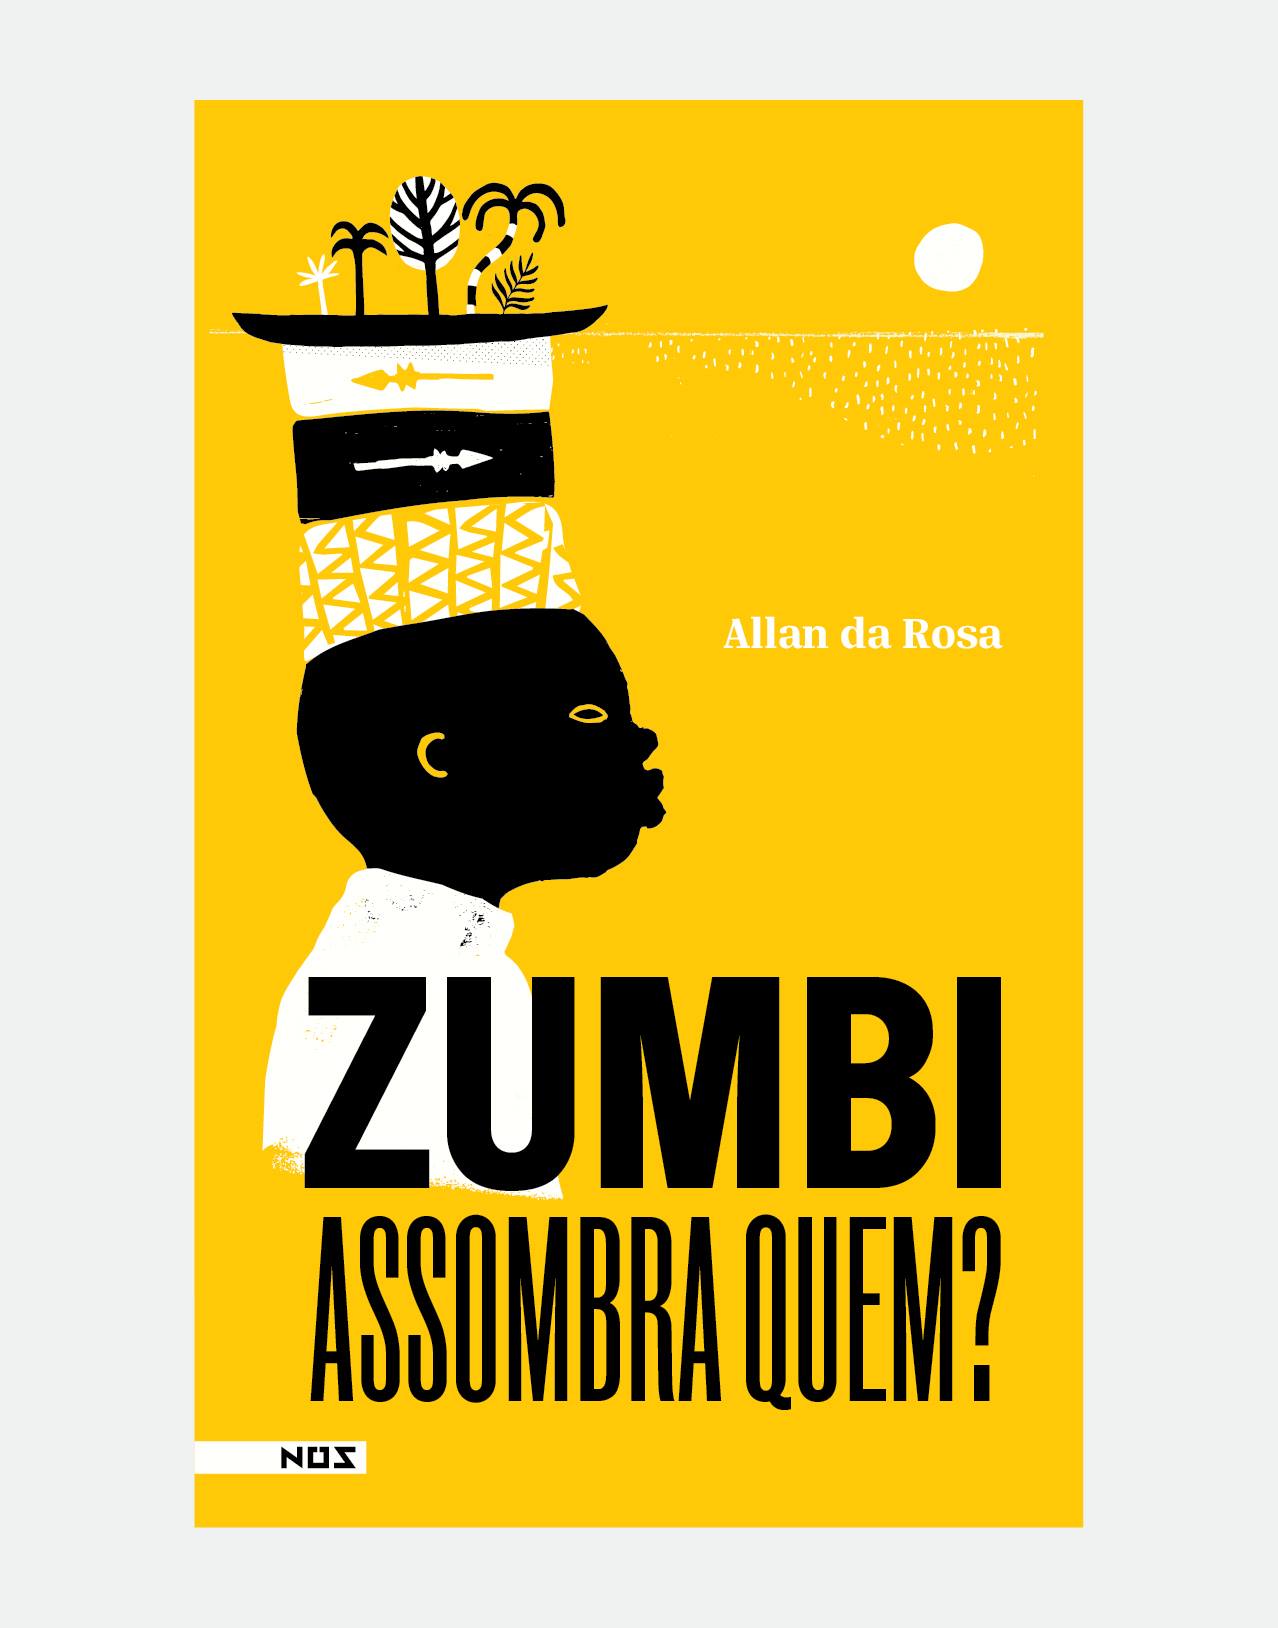 Capa do livro "Zumbi assombra quem?", de Allan da Rosa, com ilustração de um menino negro, de lado, que carrega na cabeça um chapéu com plantas.